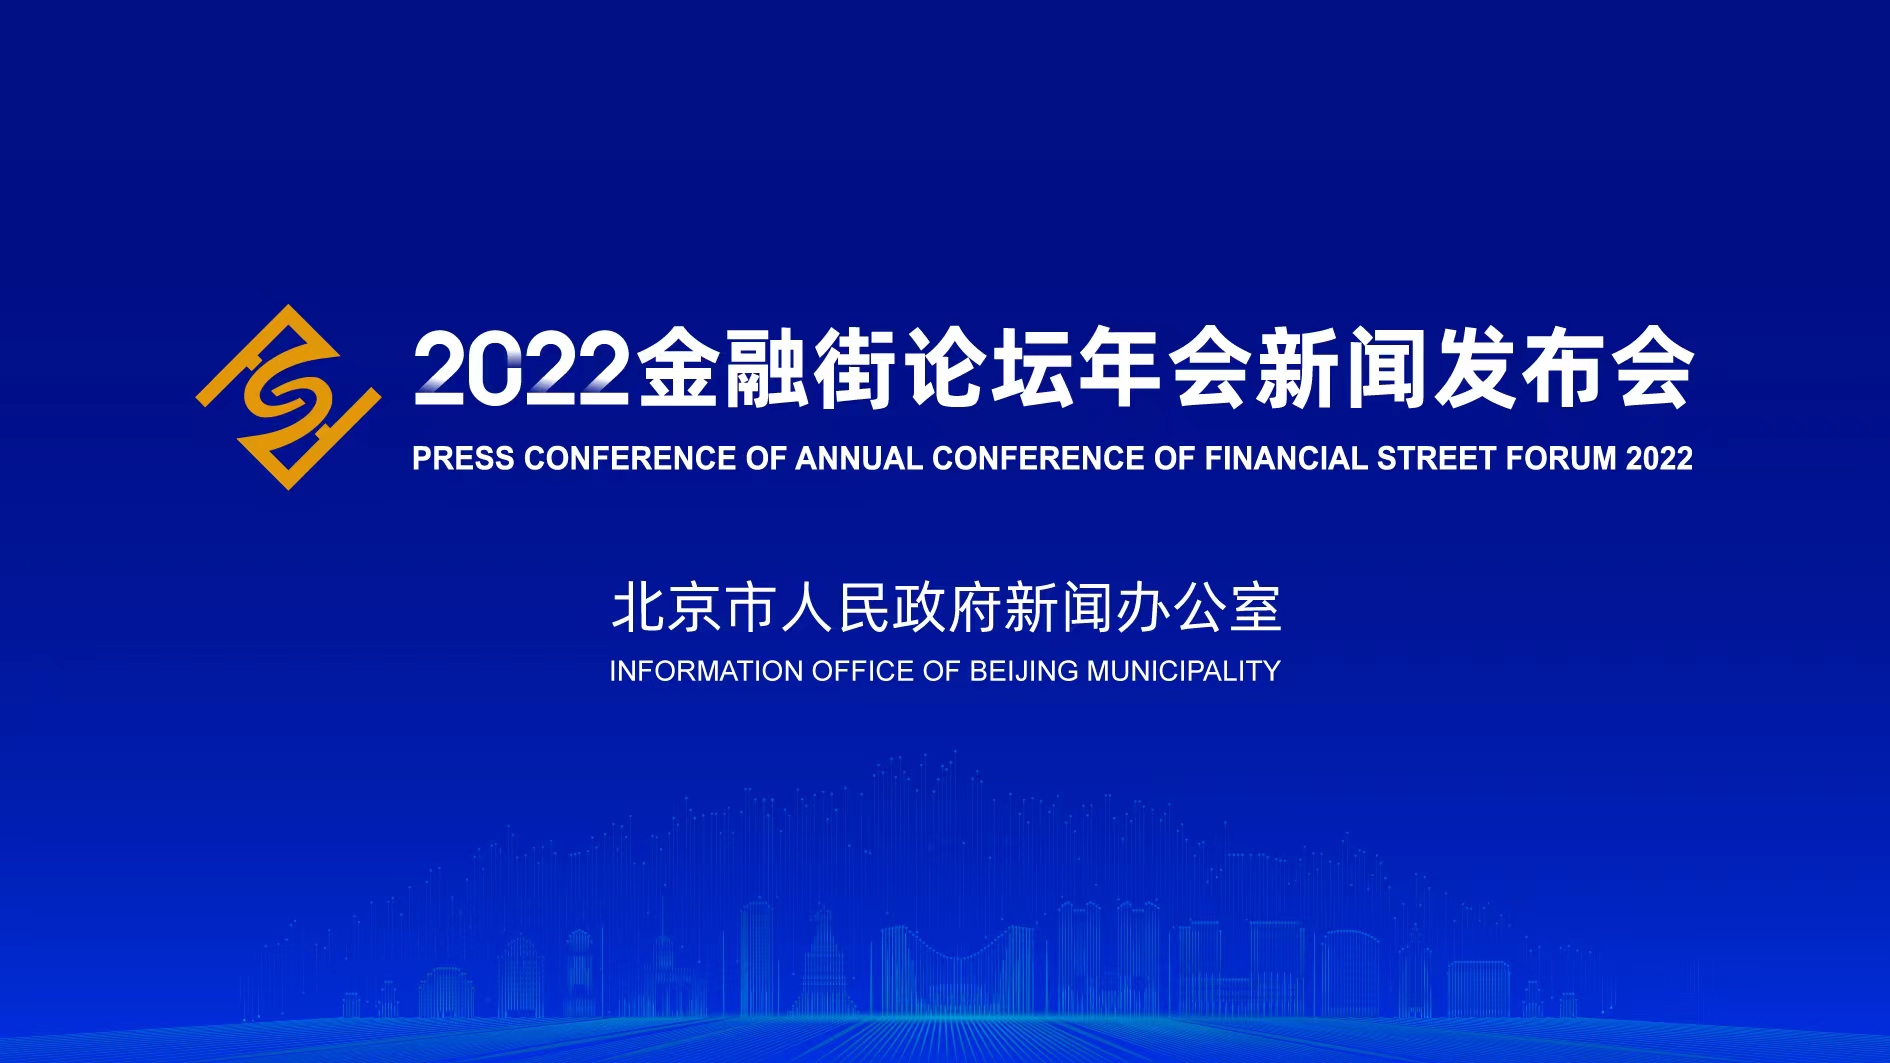 2022金融街論壇年會新聞發布會